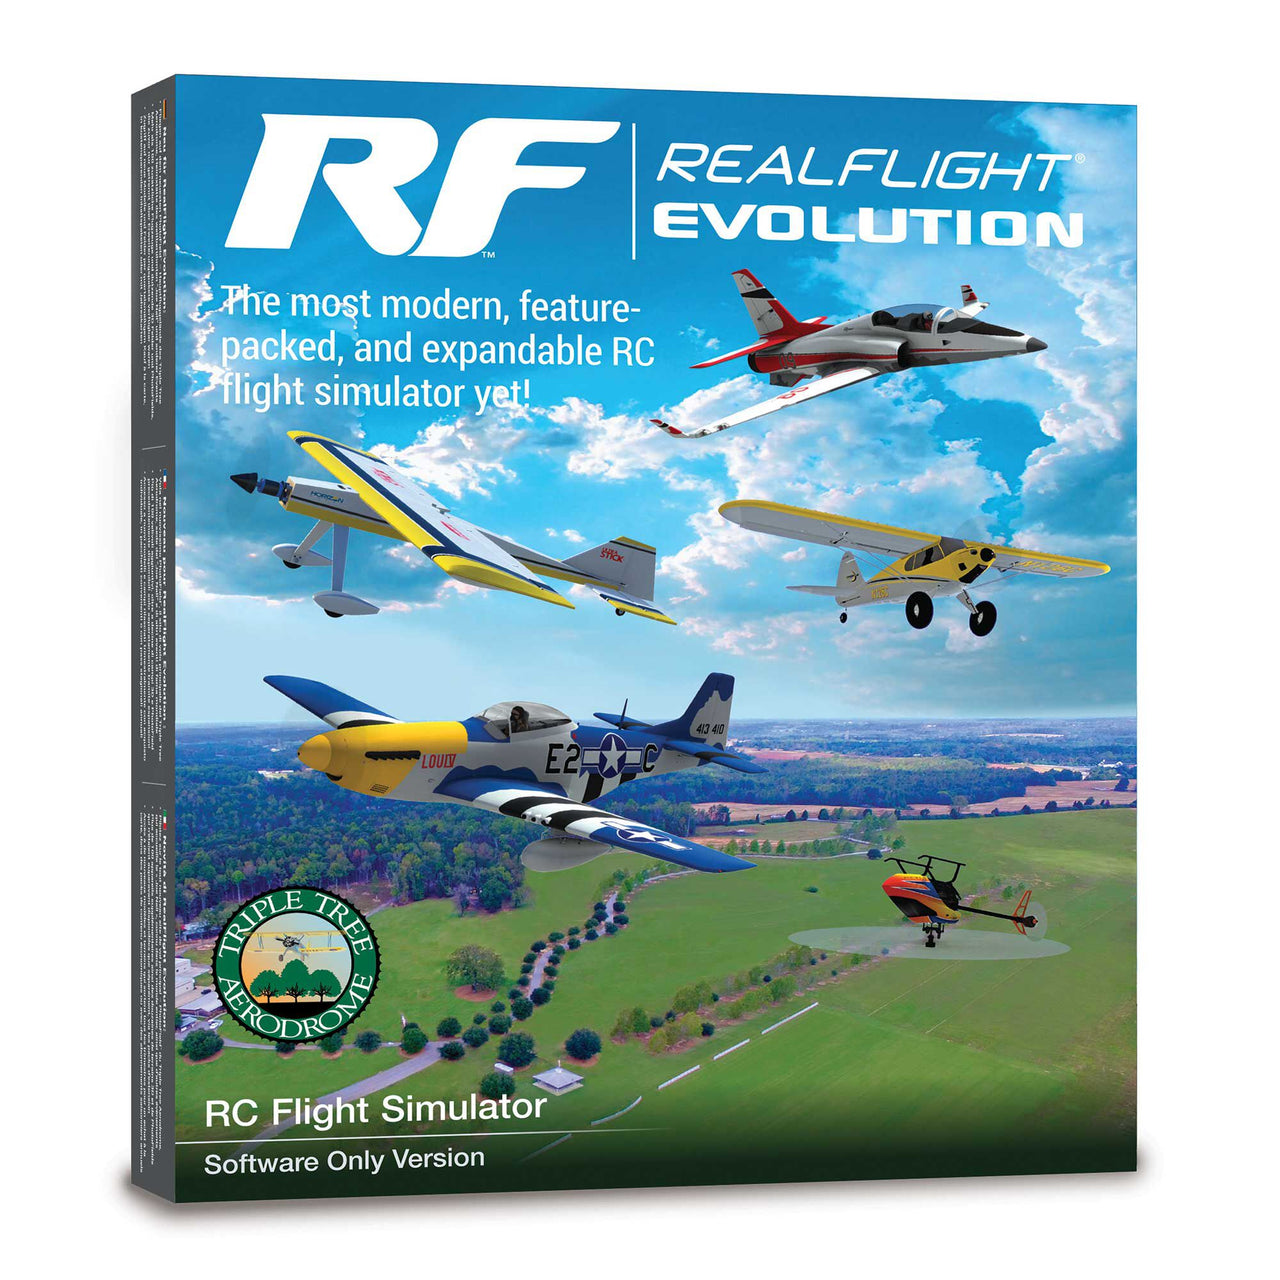 Logiciel de simulateur de vol RC RFL2001 RealFlight Evolution uniquement 